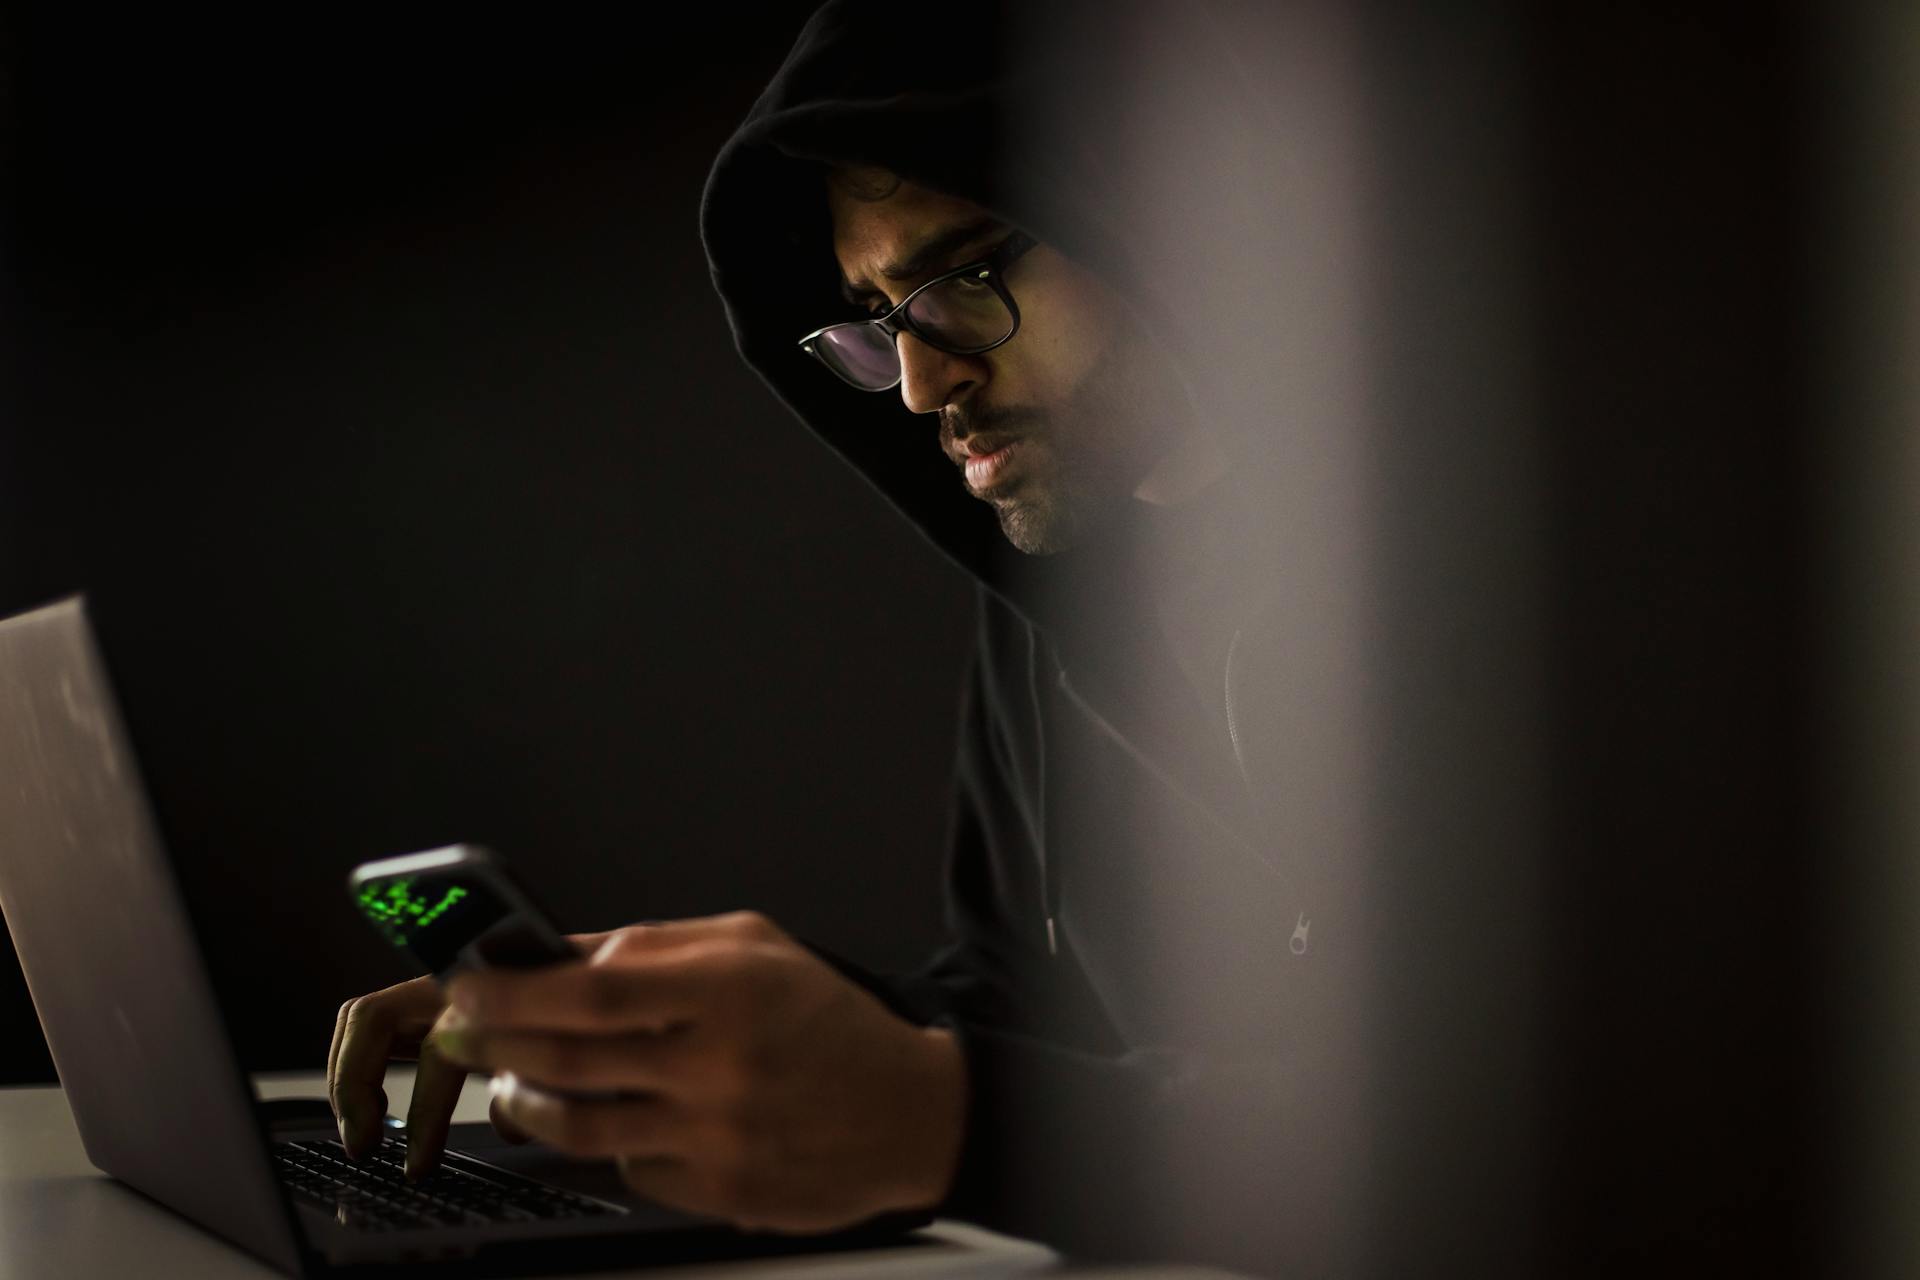 Un homme utilise son smartphone et son ordinateur pour espionner le téléphone de quelqu'un avec l'aide d'une application d'espionnage.
